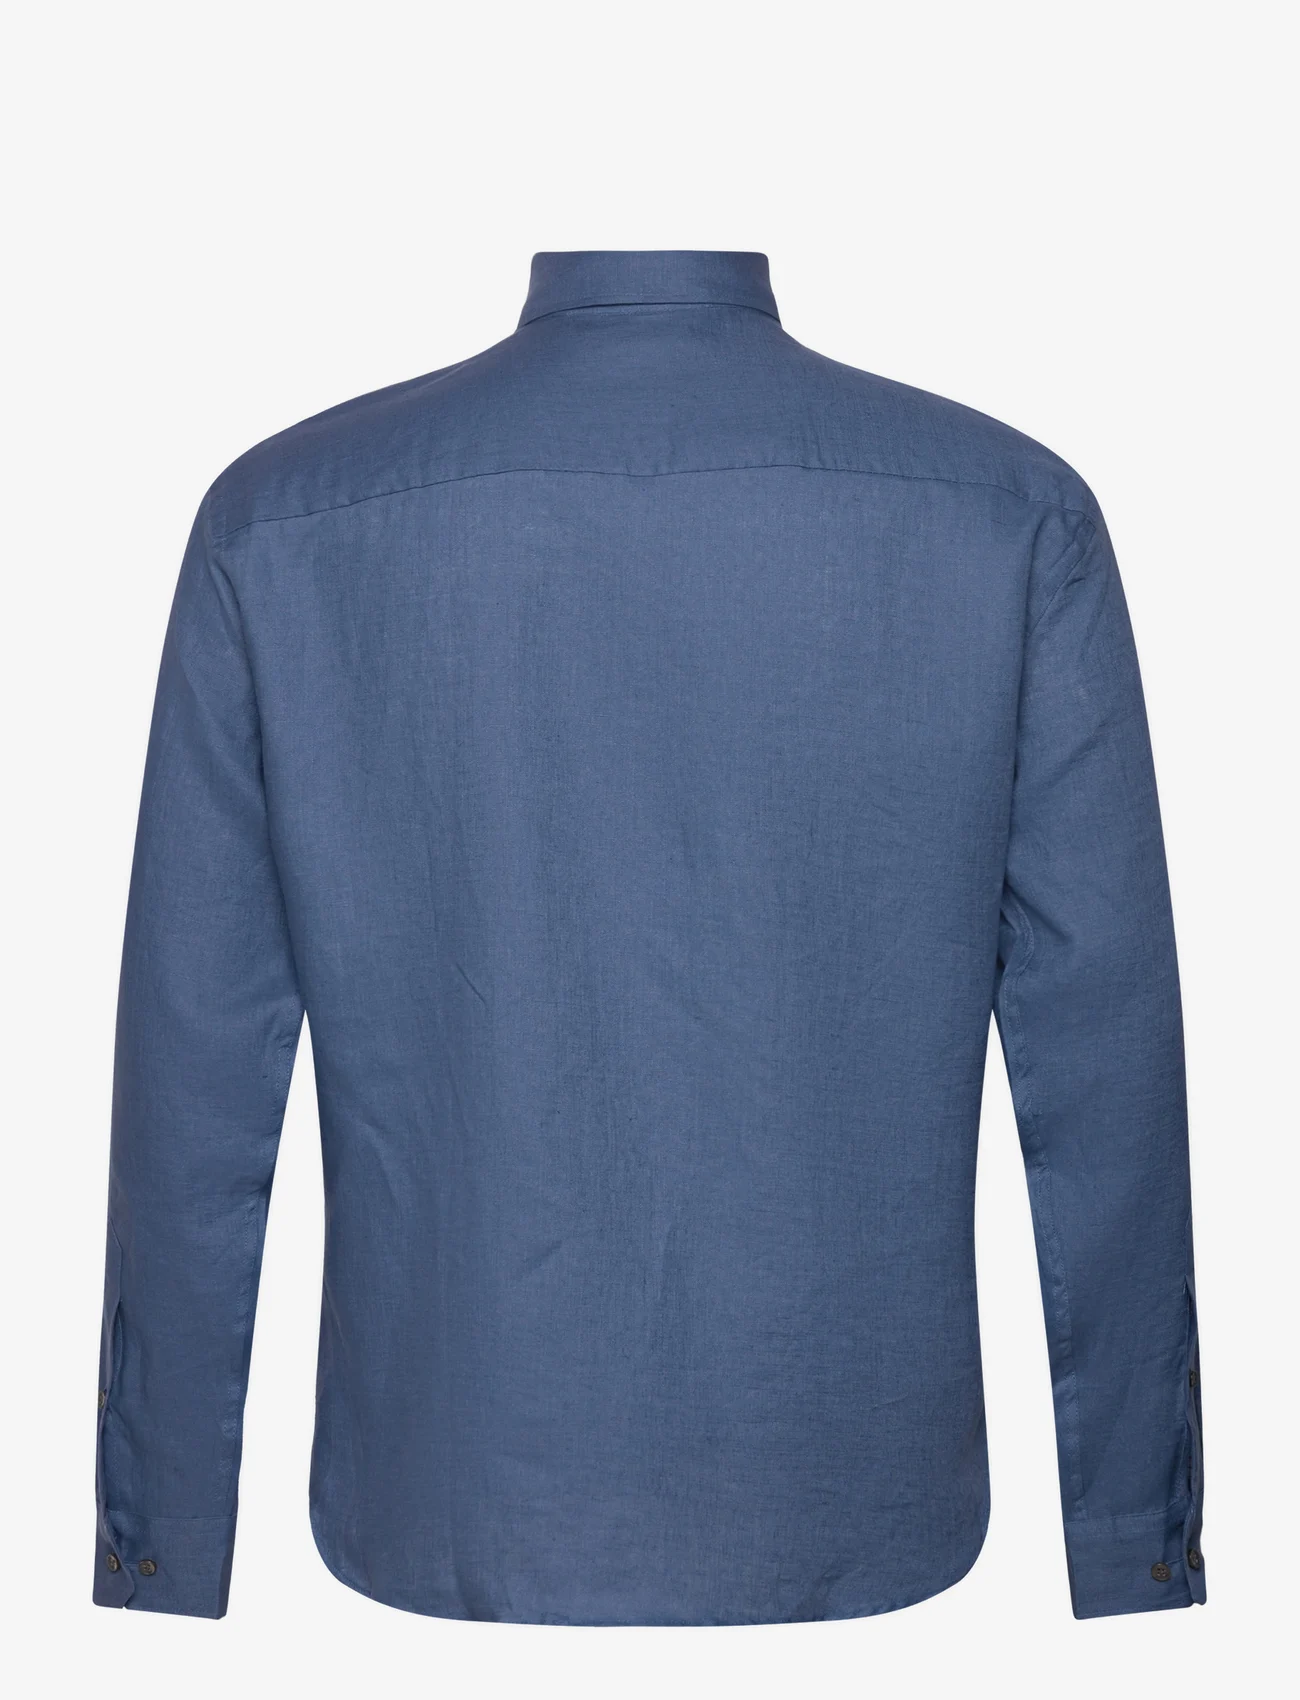 Bosweel Shirts Est. 1937 - Regular fit Men shirt - linen shirts - blue - 1